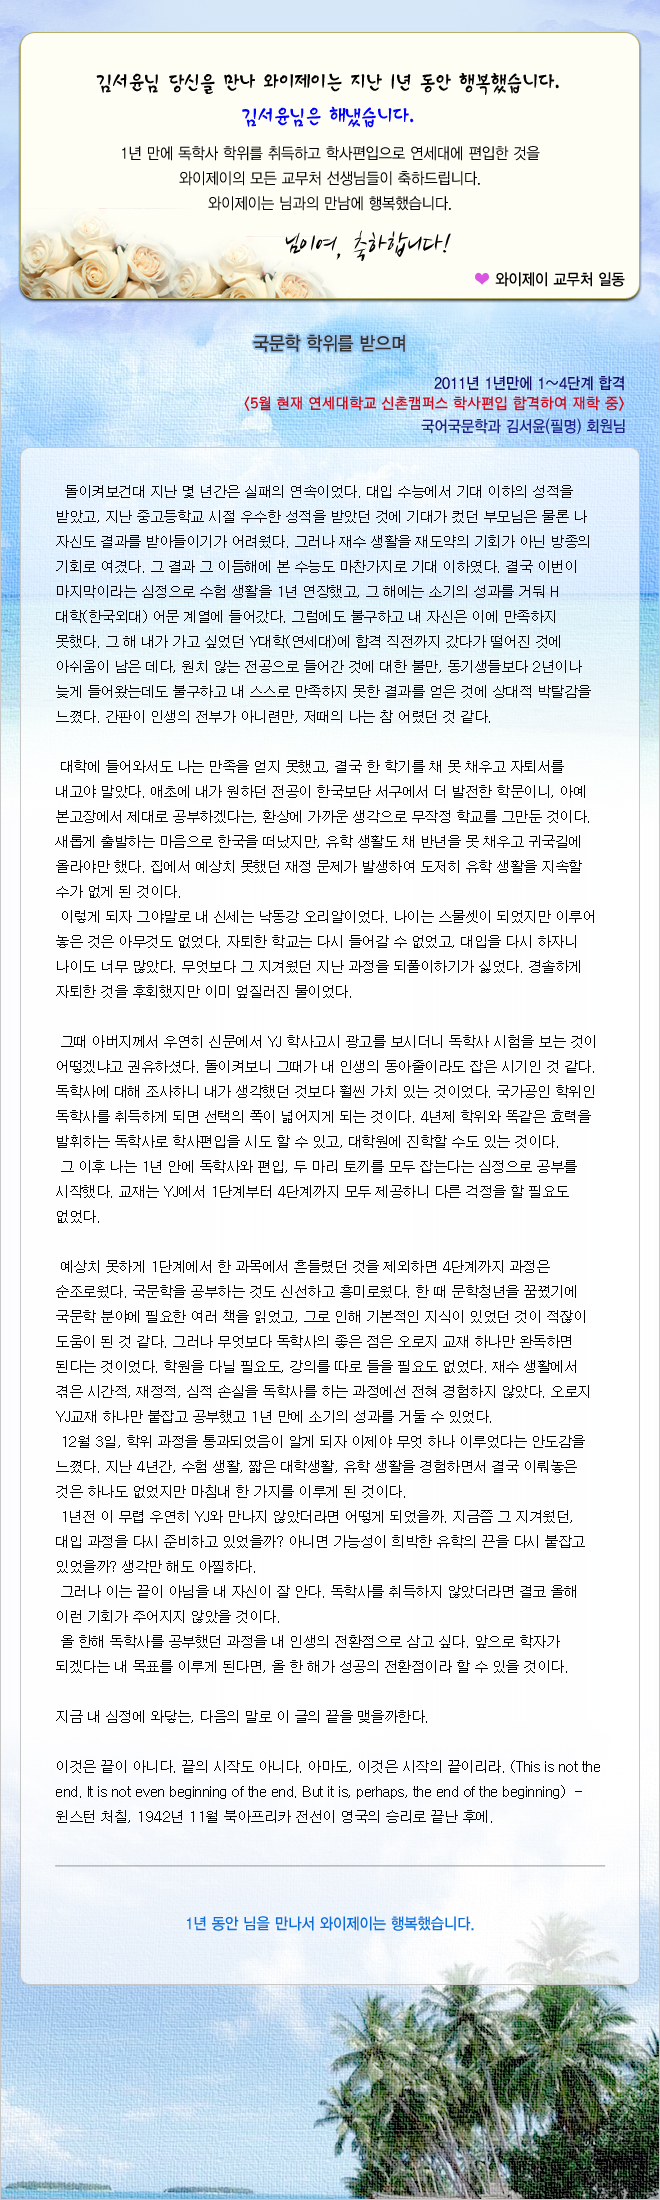 김서윤 회원님의 합격수기